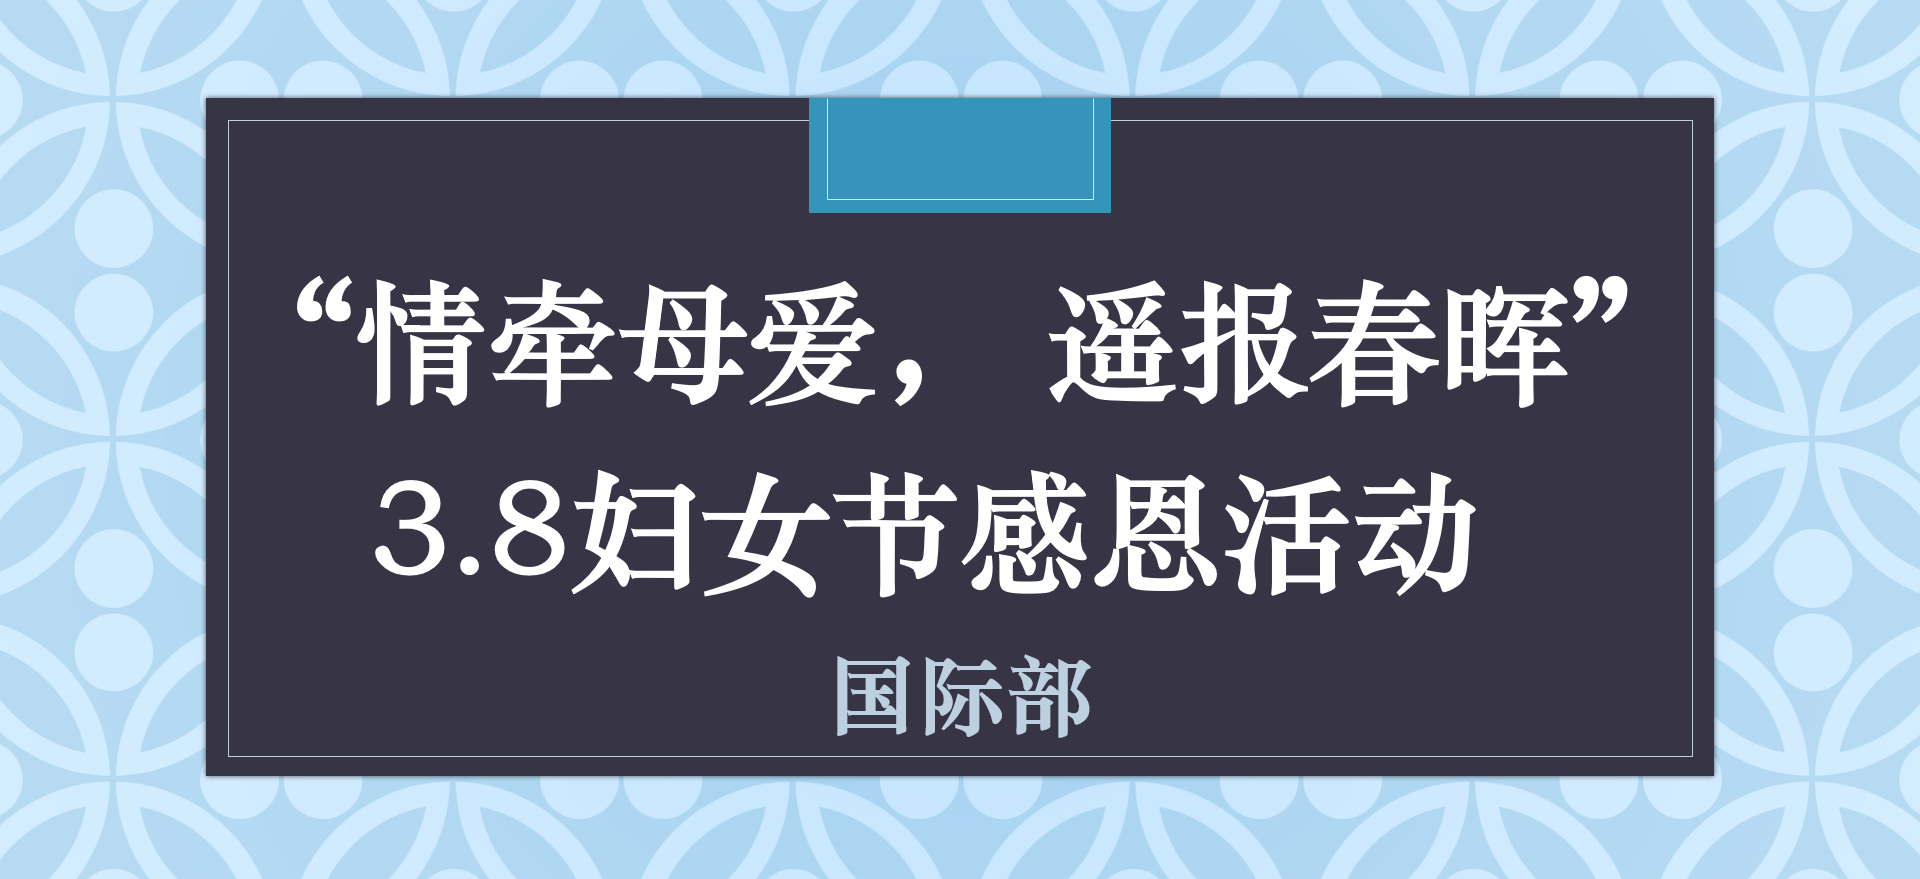 “情牵母爱， 遥报春晖”——国际部开展3.8妇女节感恩活动